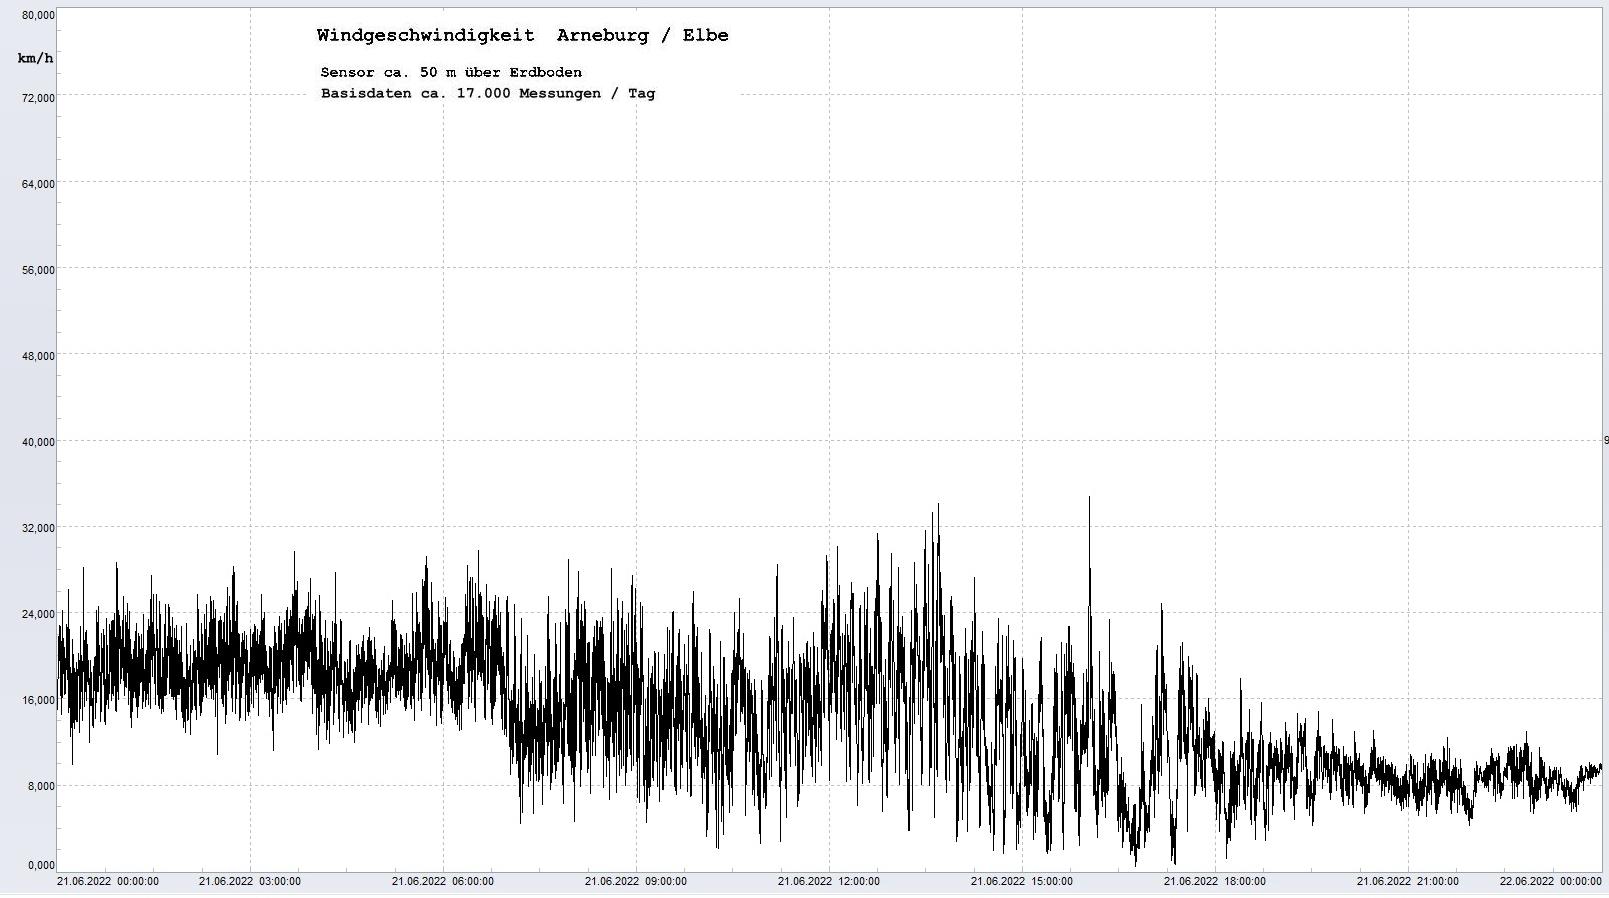 Arneburg Tages-Diagramm Winddaten, 21.06.2022
  Diagramm, Sensor auf Gebude, ca. 50 m ber Erdboden, Basis: 5s-Aufzeichnung